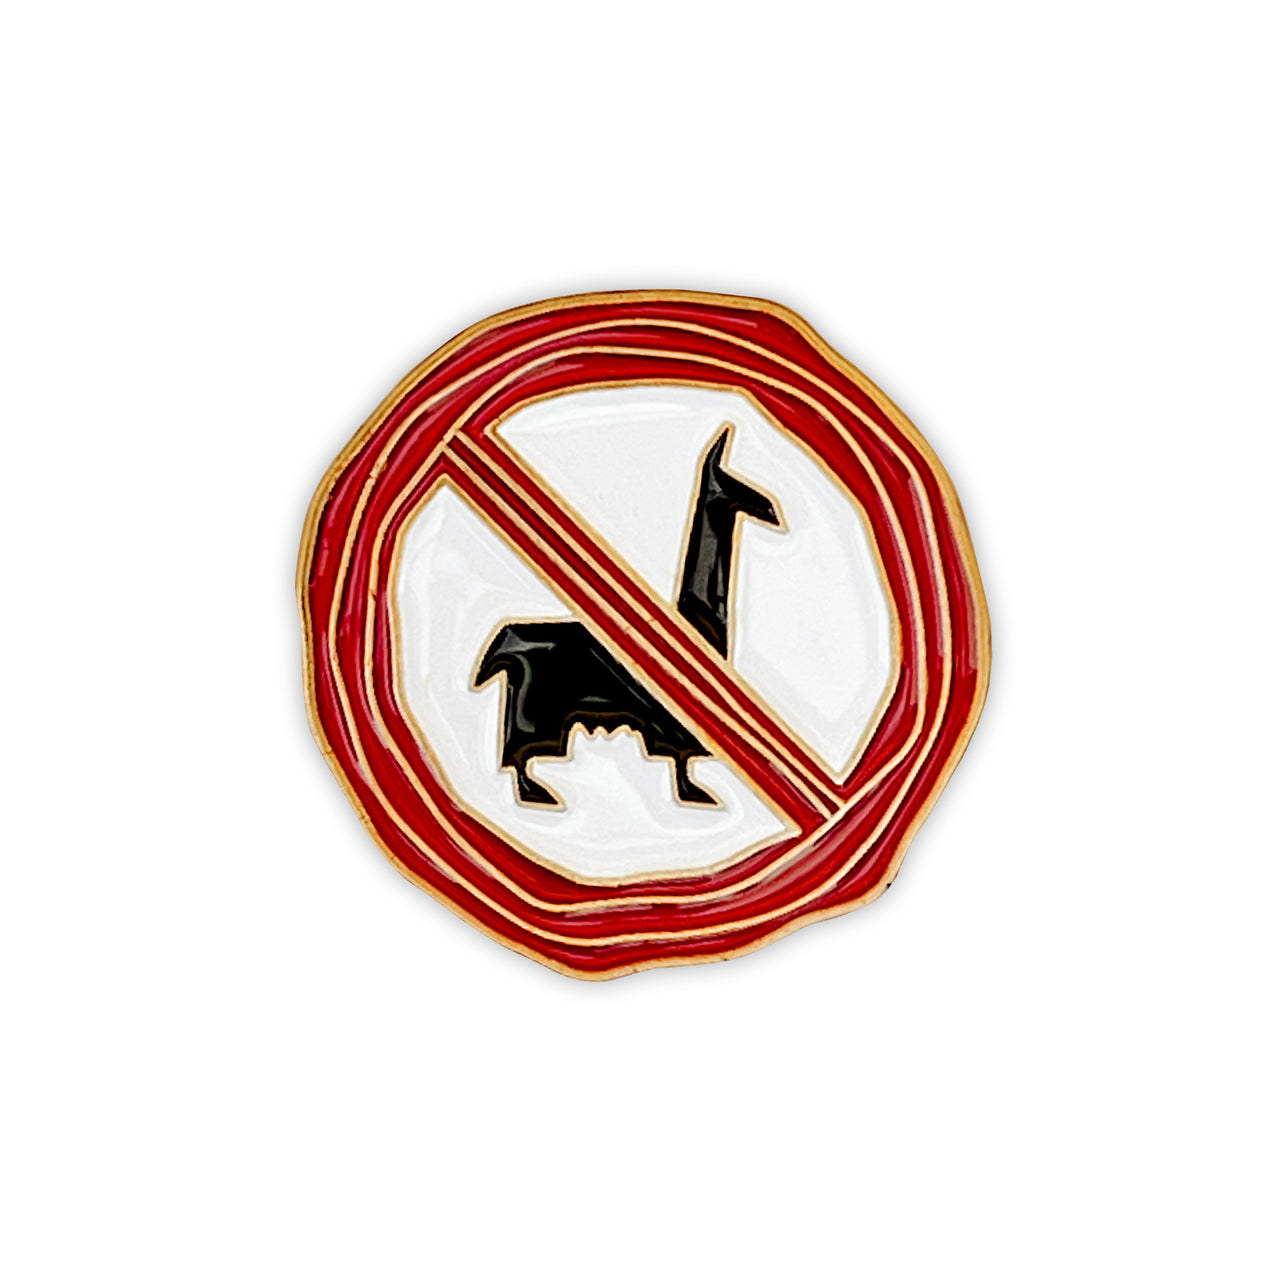 No Llamas Allowed Pin